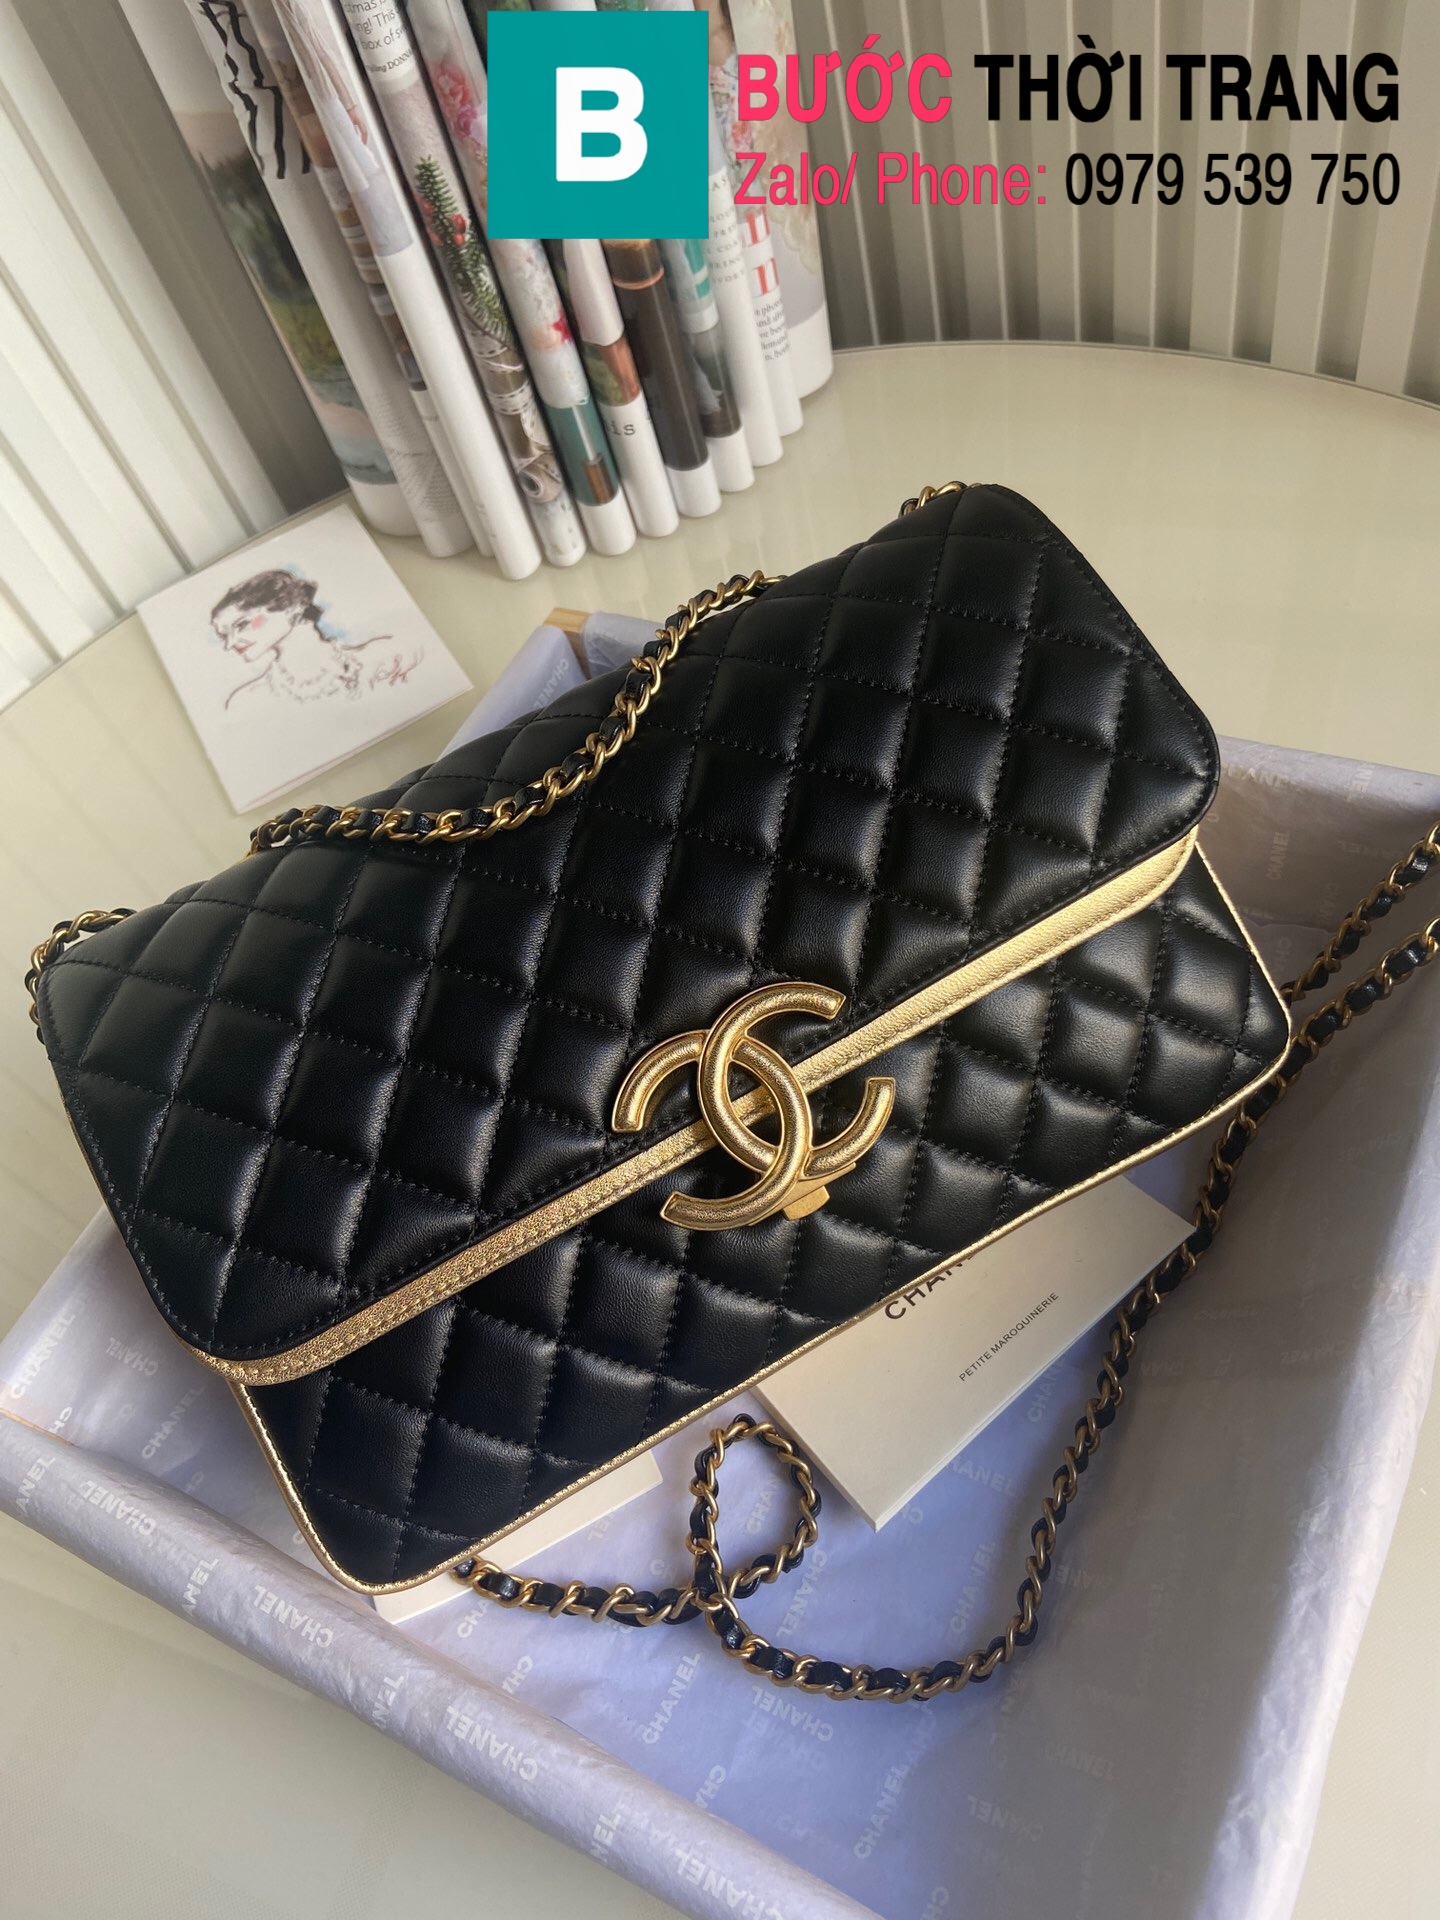 Túi xách Chanel Enamel CC Plap Bag siêu cấp da cừu màu đen vàng size 26cm –  57276 – Túi xách cao cấp, những mẫu túi siêu cấp, like authentic cực đẹp